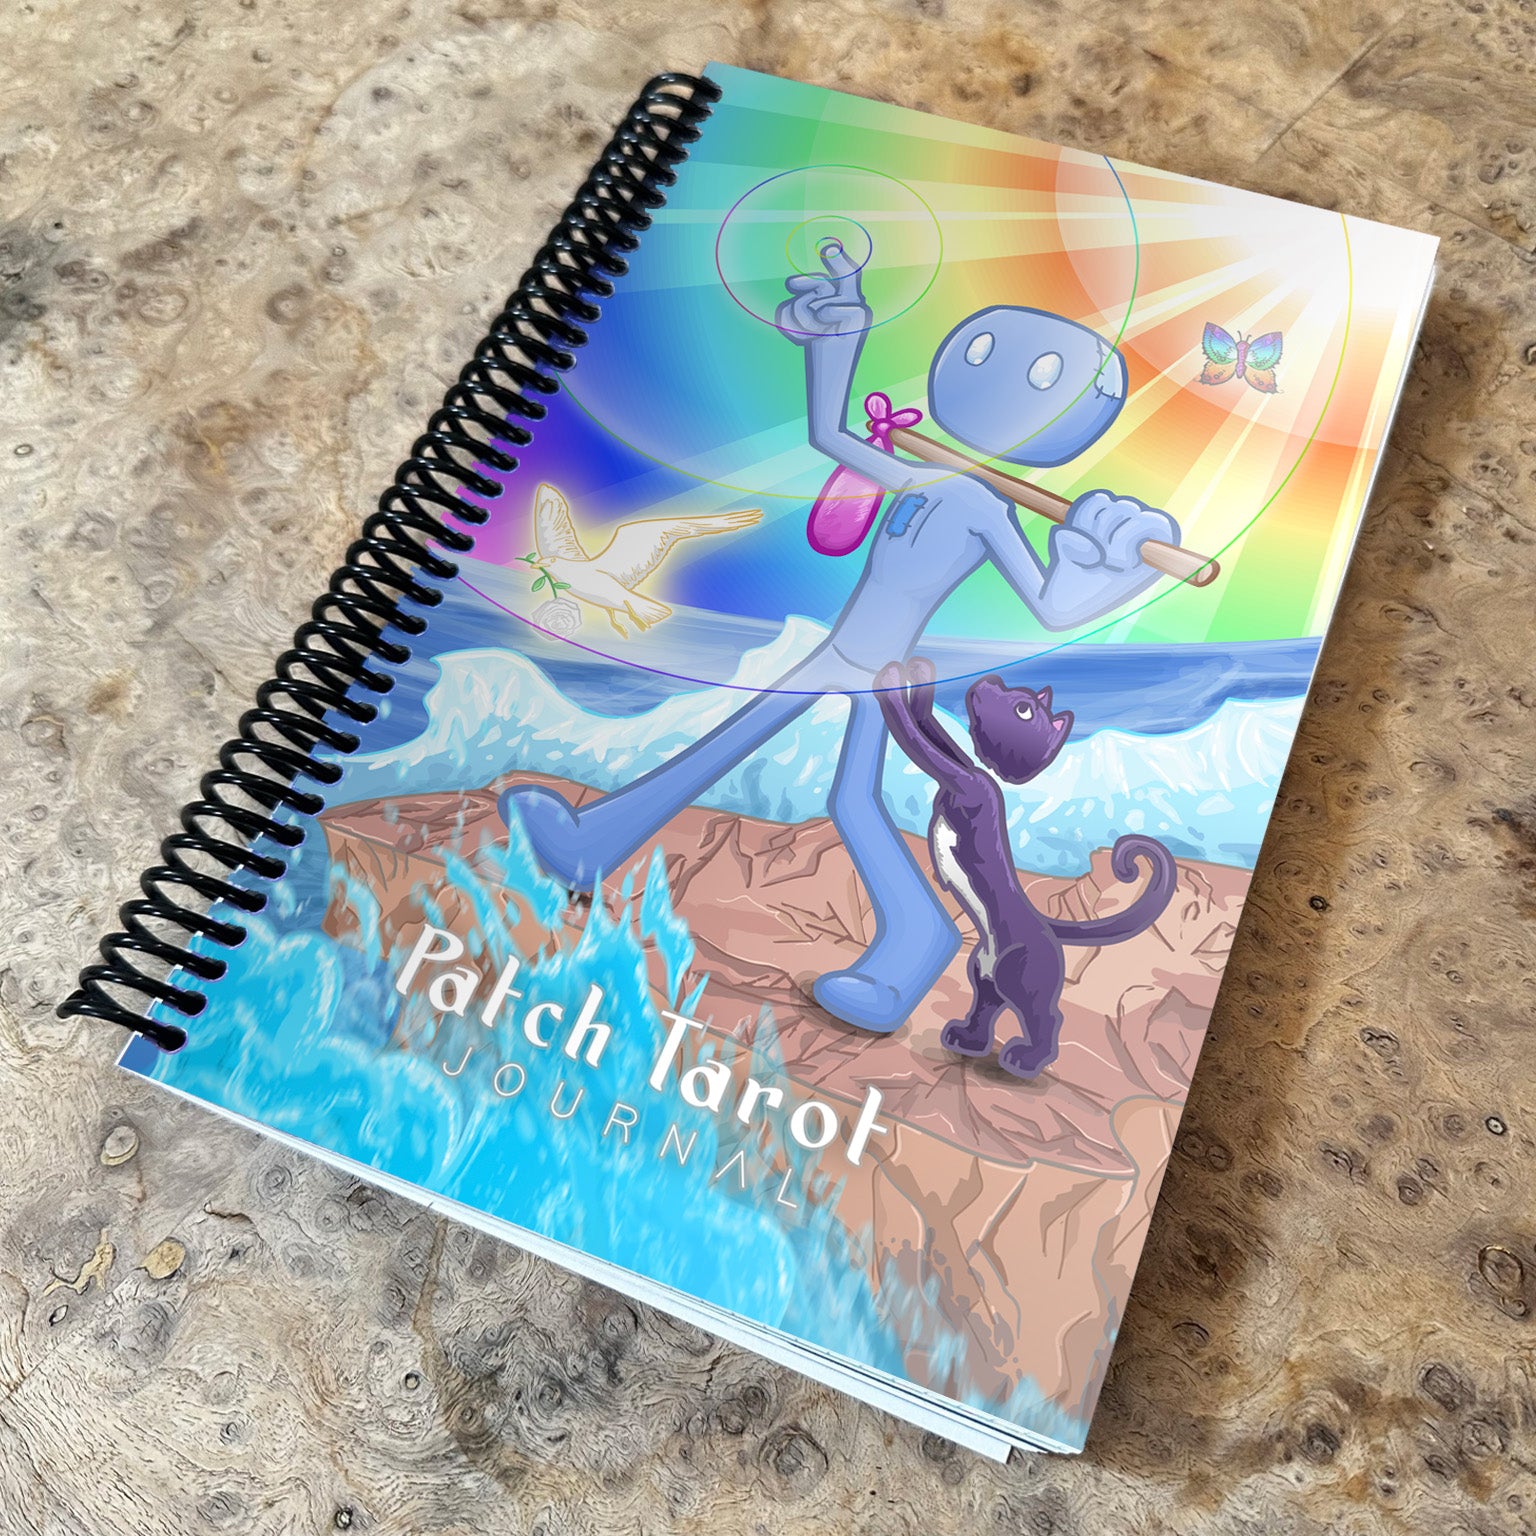 Patch Tarot Creativity Journal